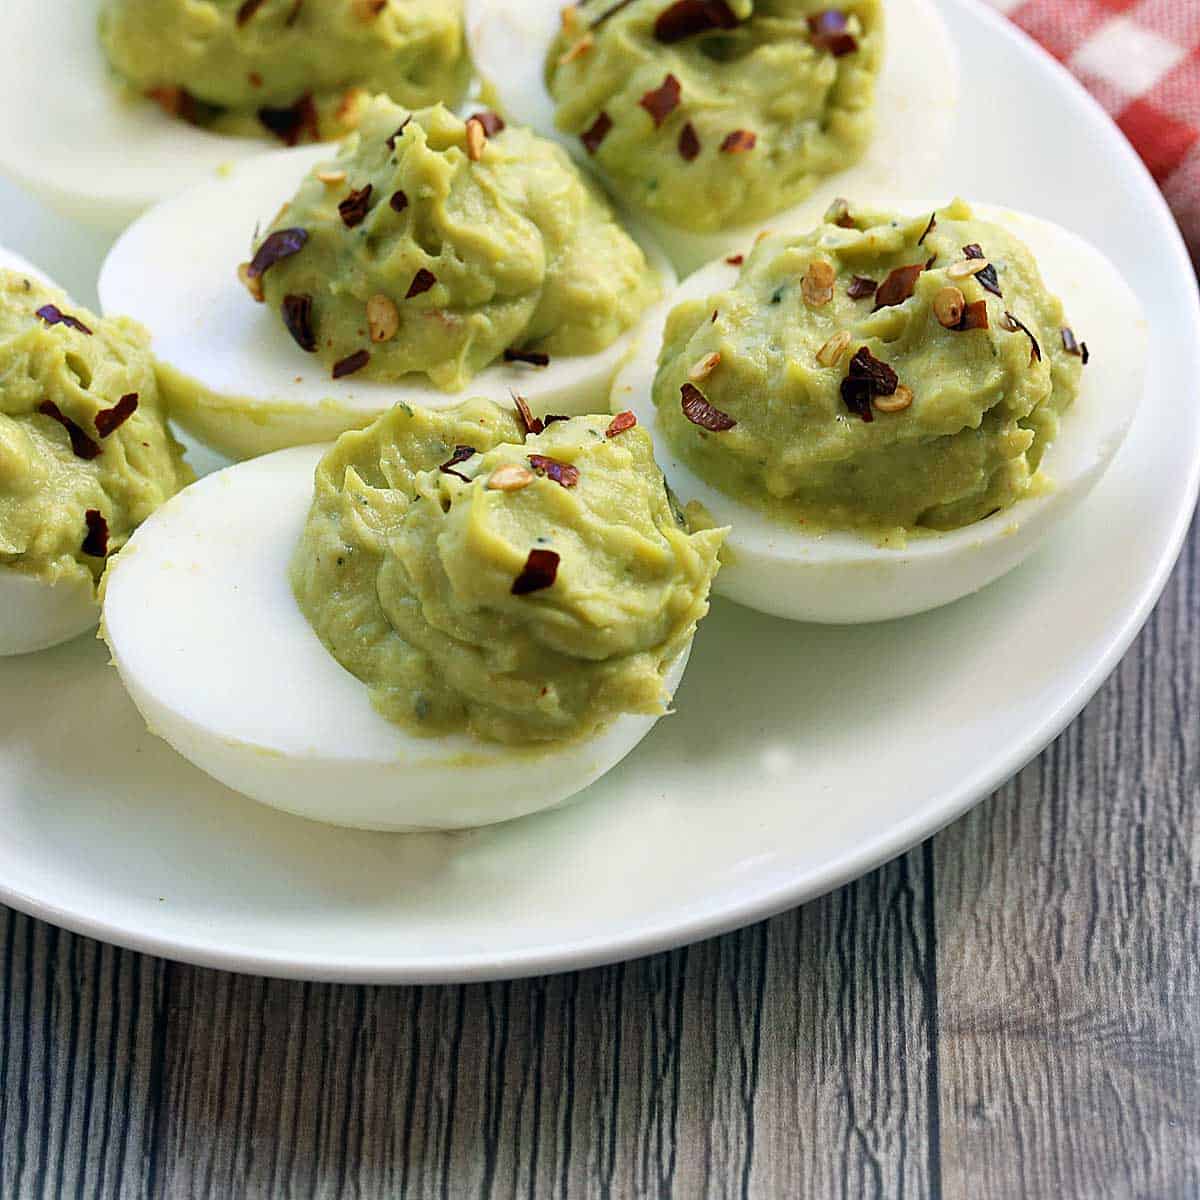 Avocado Deviled Eggs - Healthy Recipes Blog